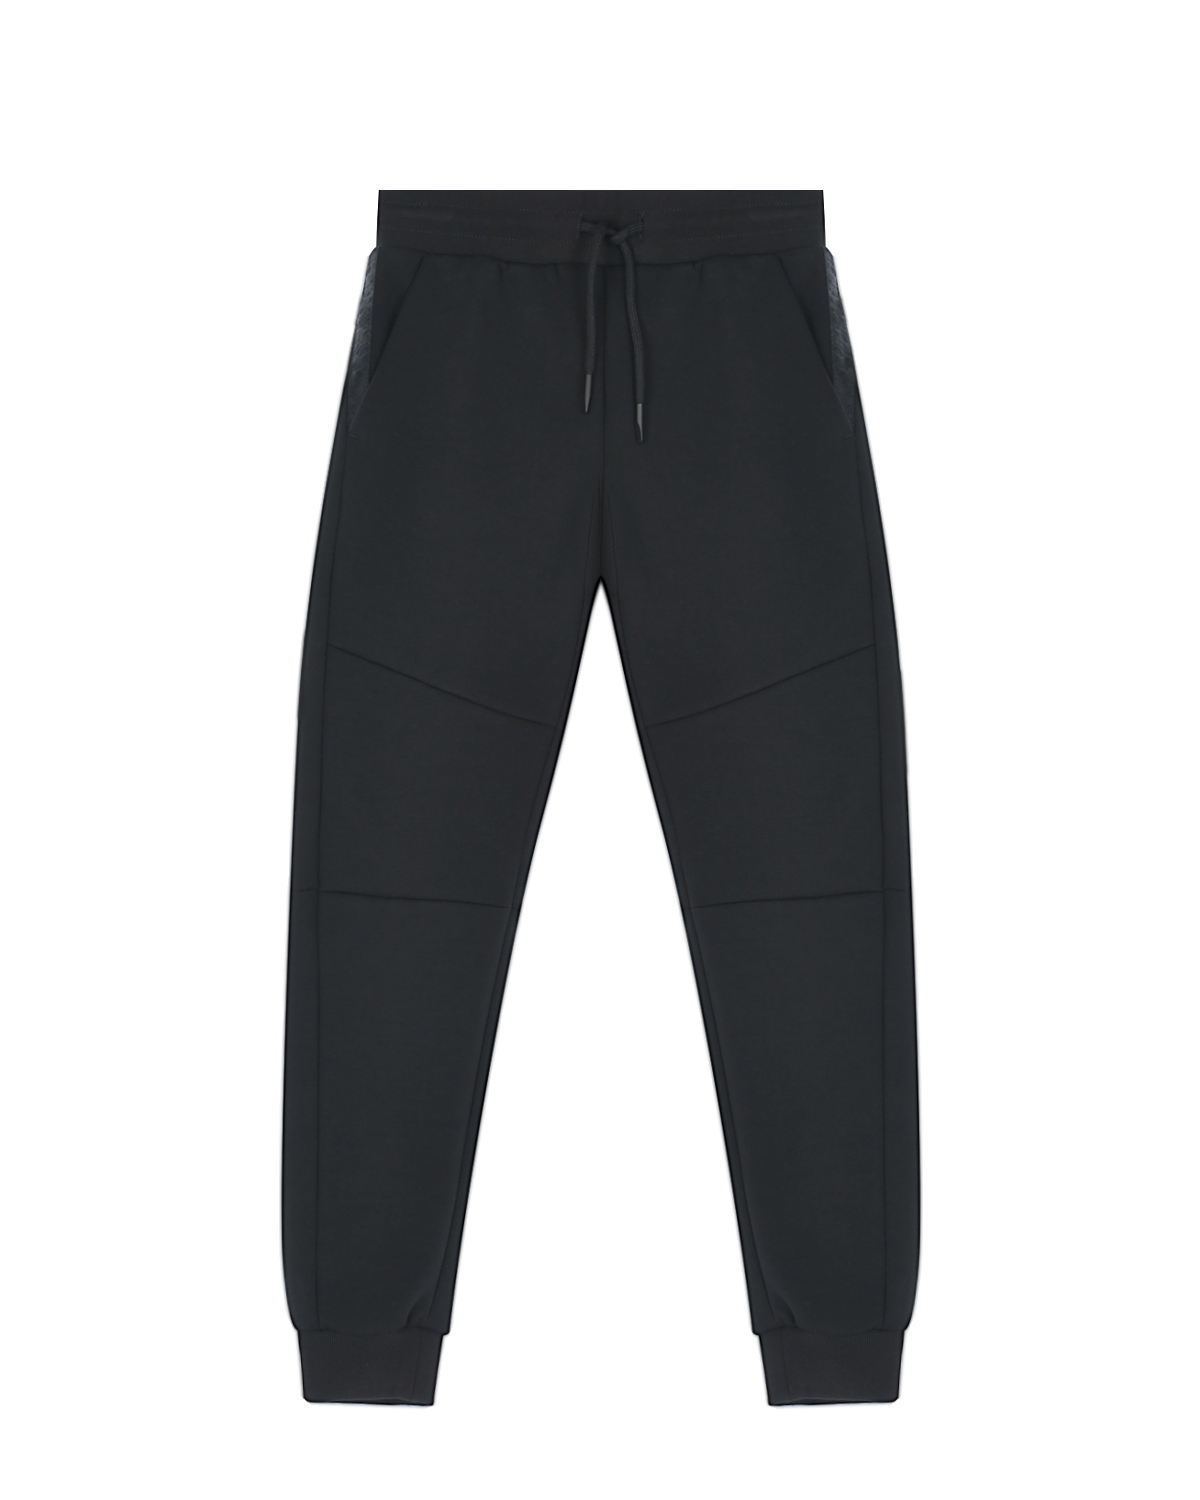 Черные спортивные брюки со вставками на коленях Antony Morato детские, размер 164, цвет черный - фото 1